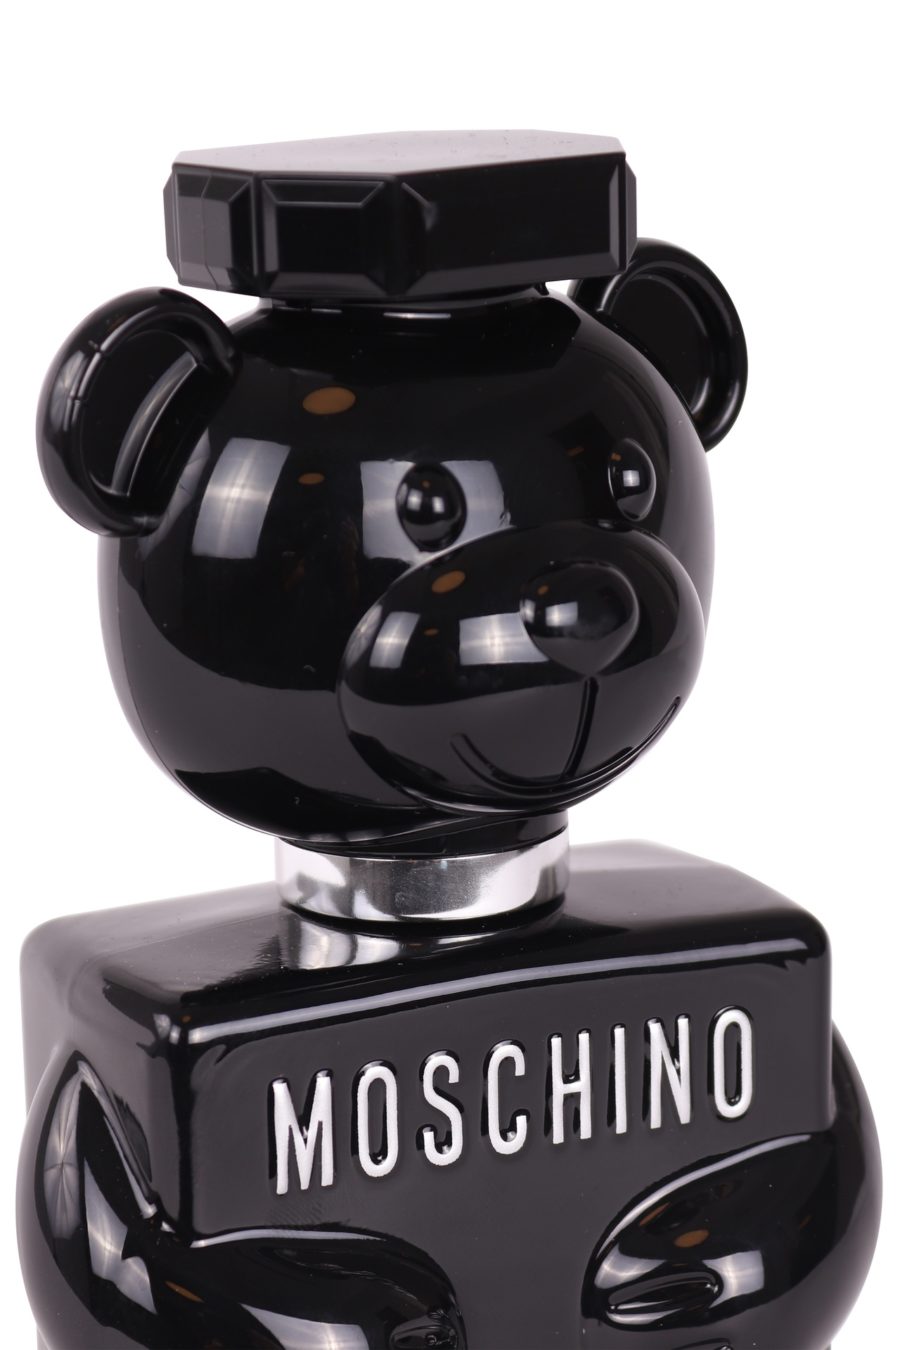 Moschino Toy Boy eau de parfum 100 ml - 472e85a9b312d66f991cd7ff740ef91029e81e0c